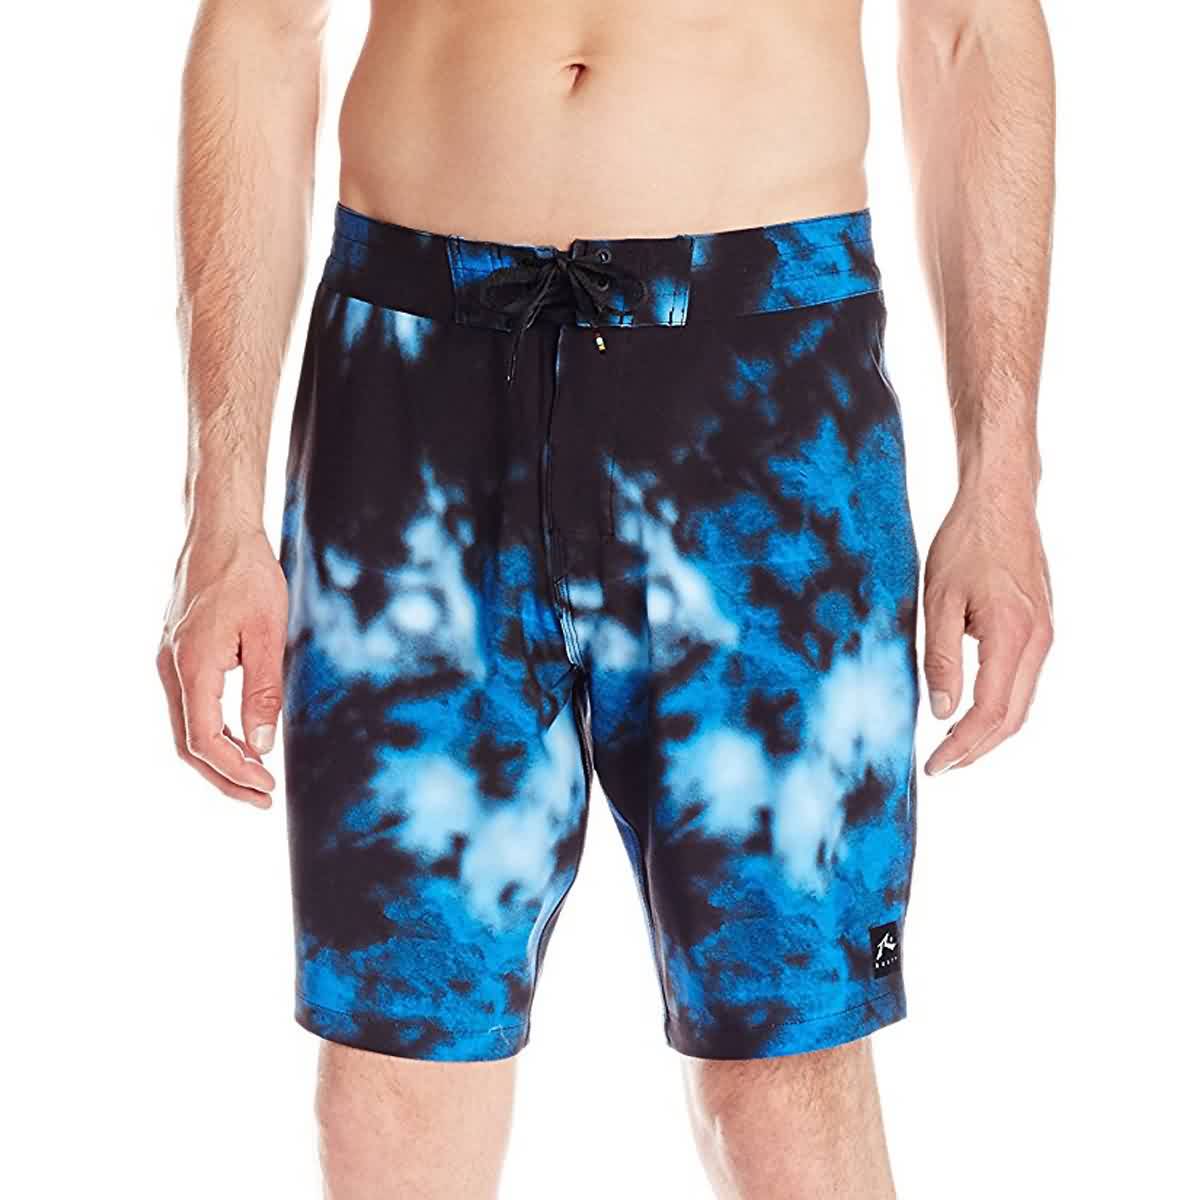 Rusty Solvent Men's Boardshort Shorts - Light Blue Lagoon